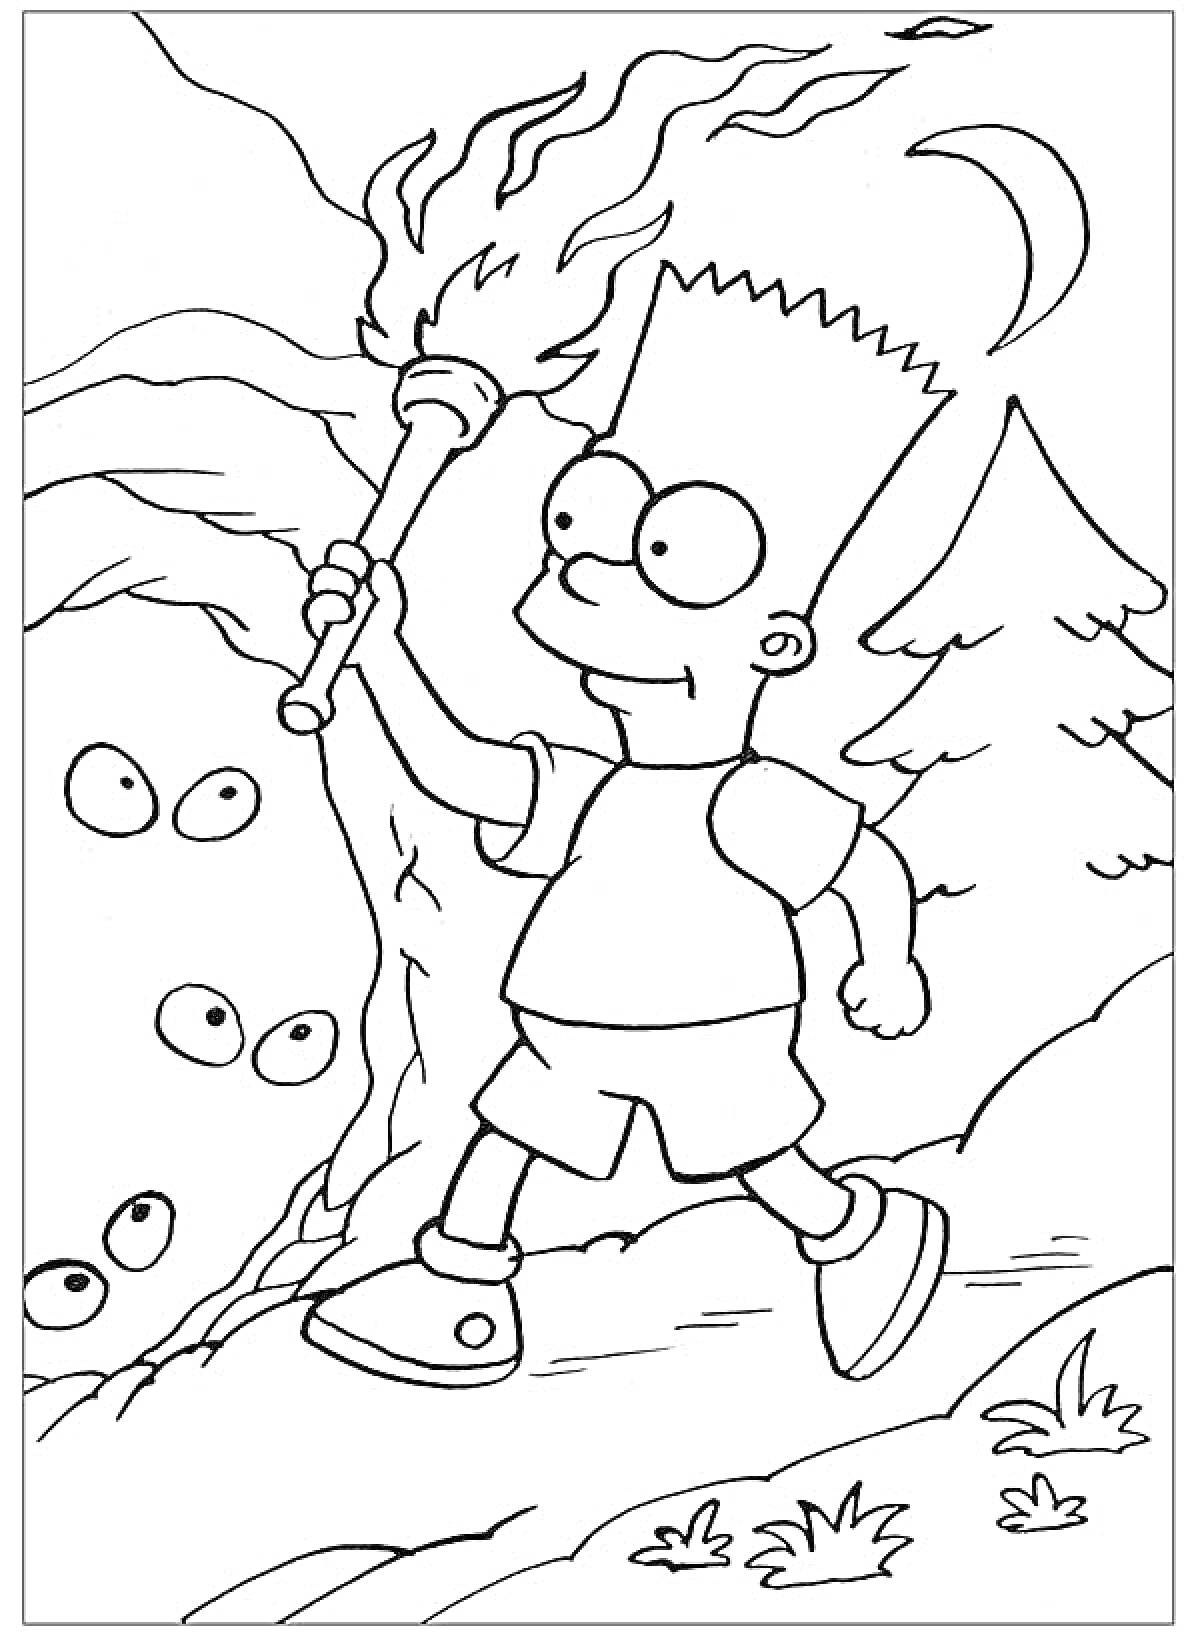 Раскраска Барт Симпсон с факелом идет по лесу в ночное время